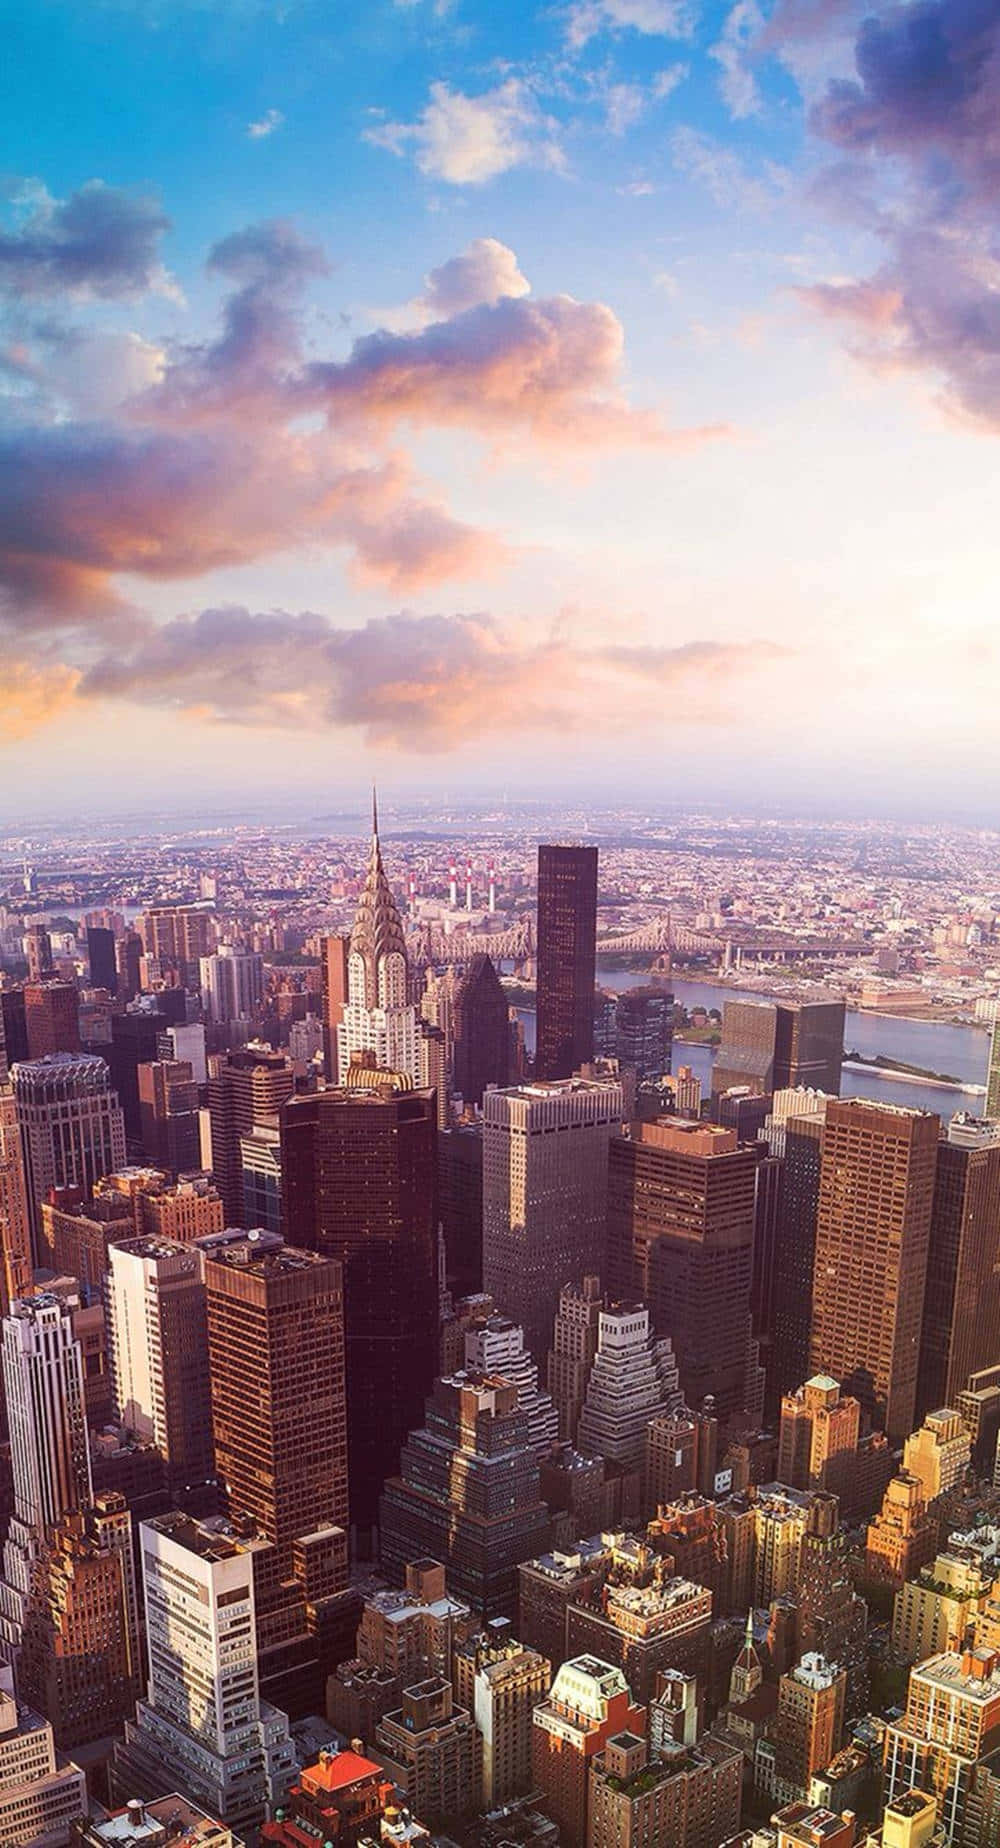 Genießensie Eine Atemberaubende Aussicht Auf Den Attan Park In New York City Mit Ihrem Nagelneuen Iphone Xs.